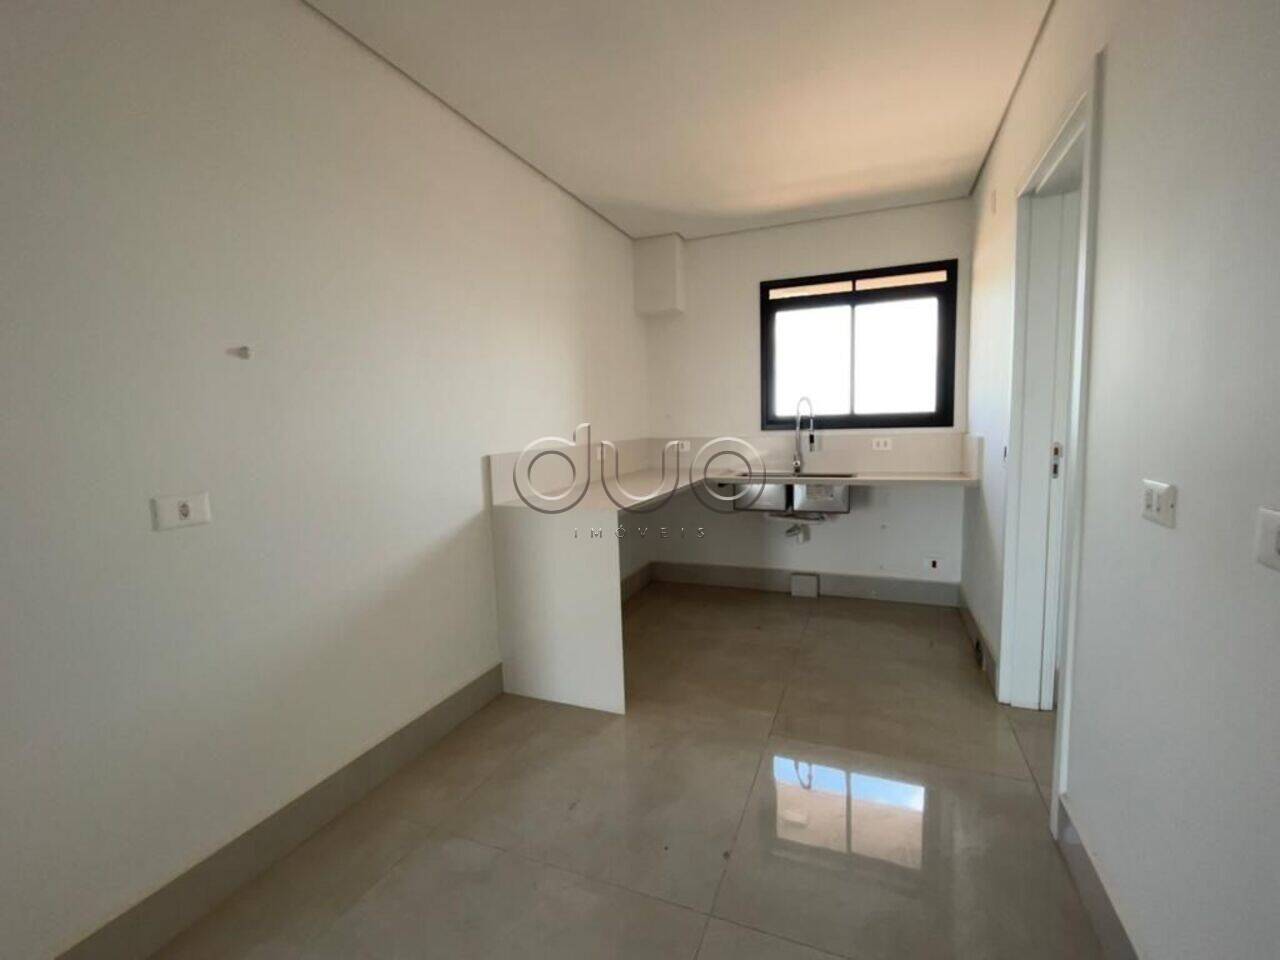 Apartamento com 3 dormitórios à venda, 163 m² por R$ 1.700.000 - São Dimas - Piracicaba/SP